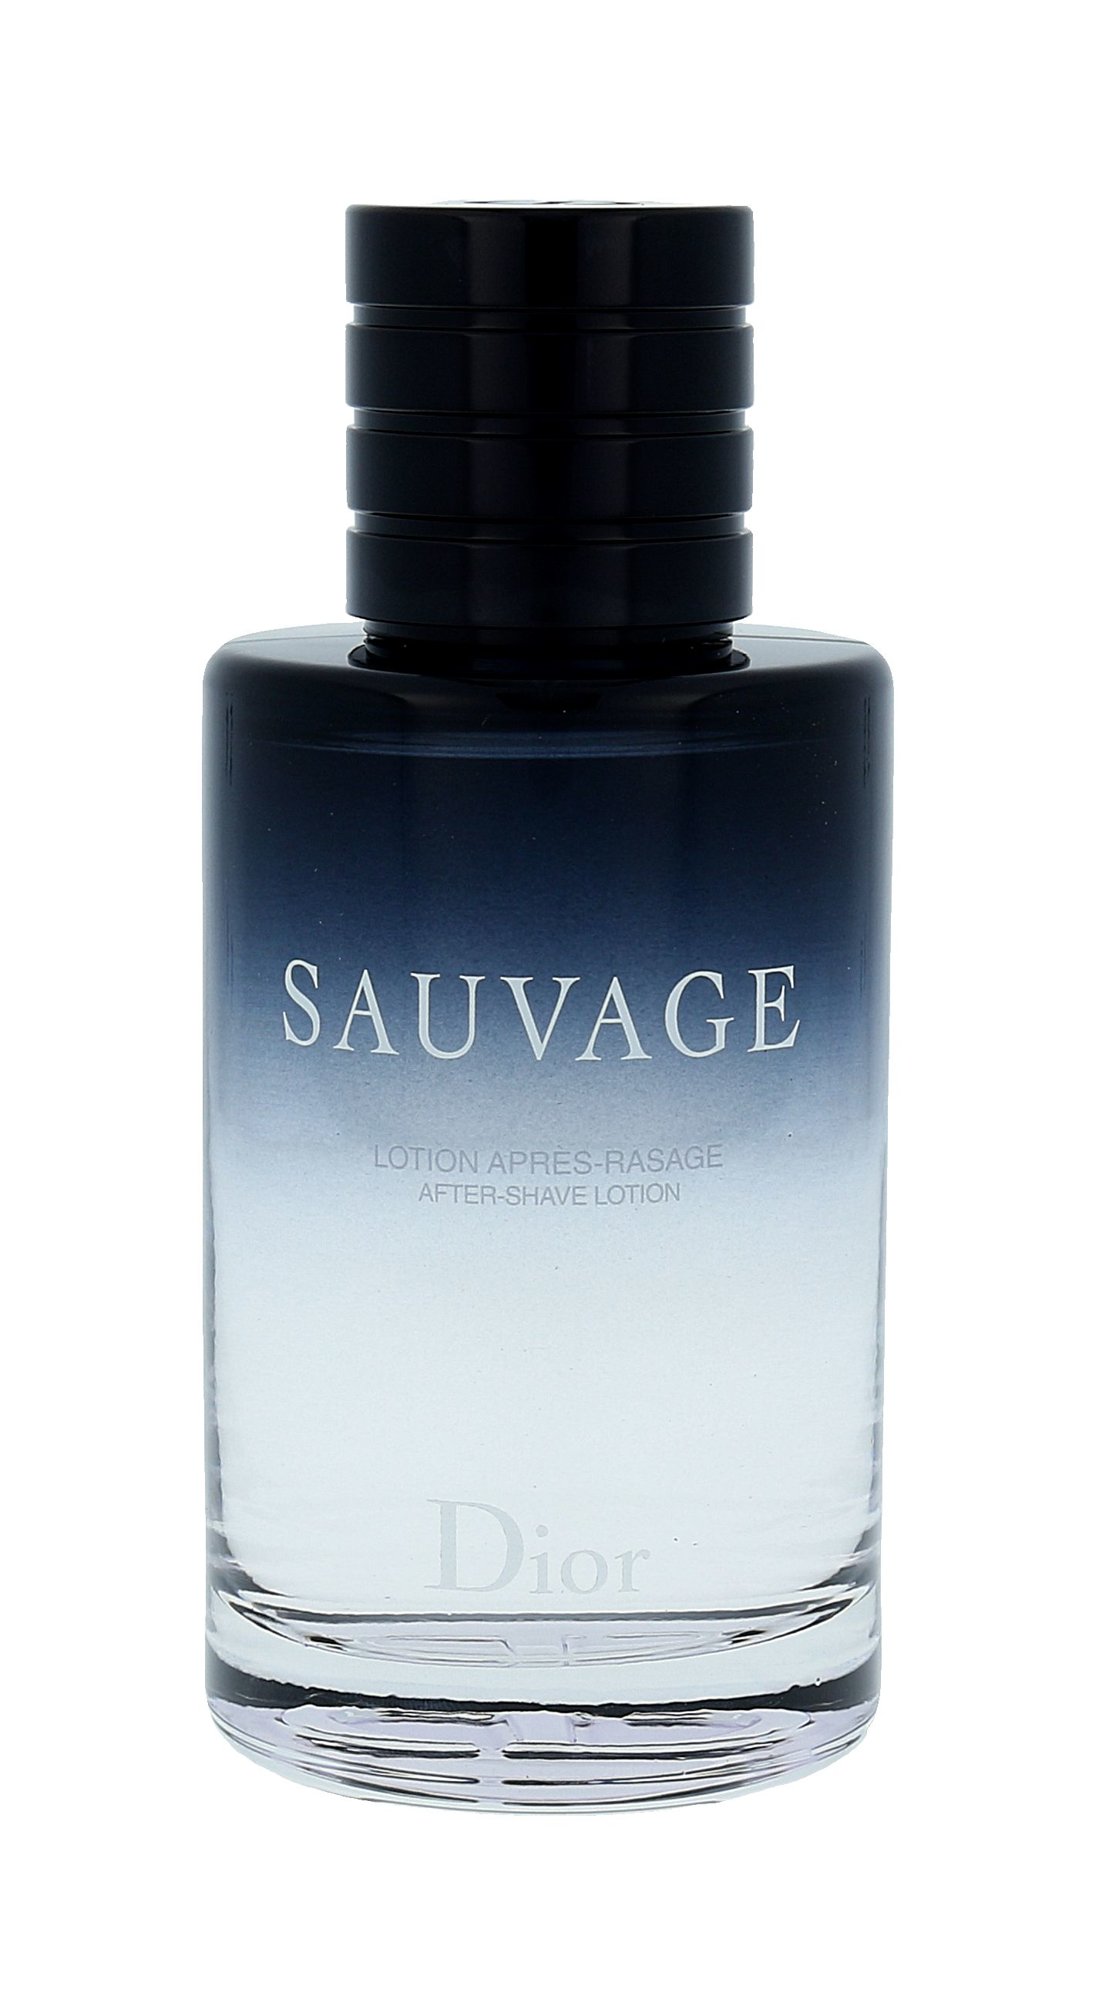 Christian Dior Sauvage 100ml vanduo po skutimosi